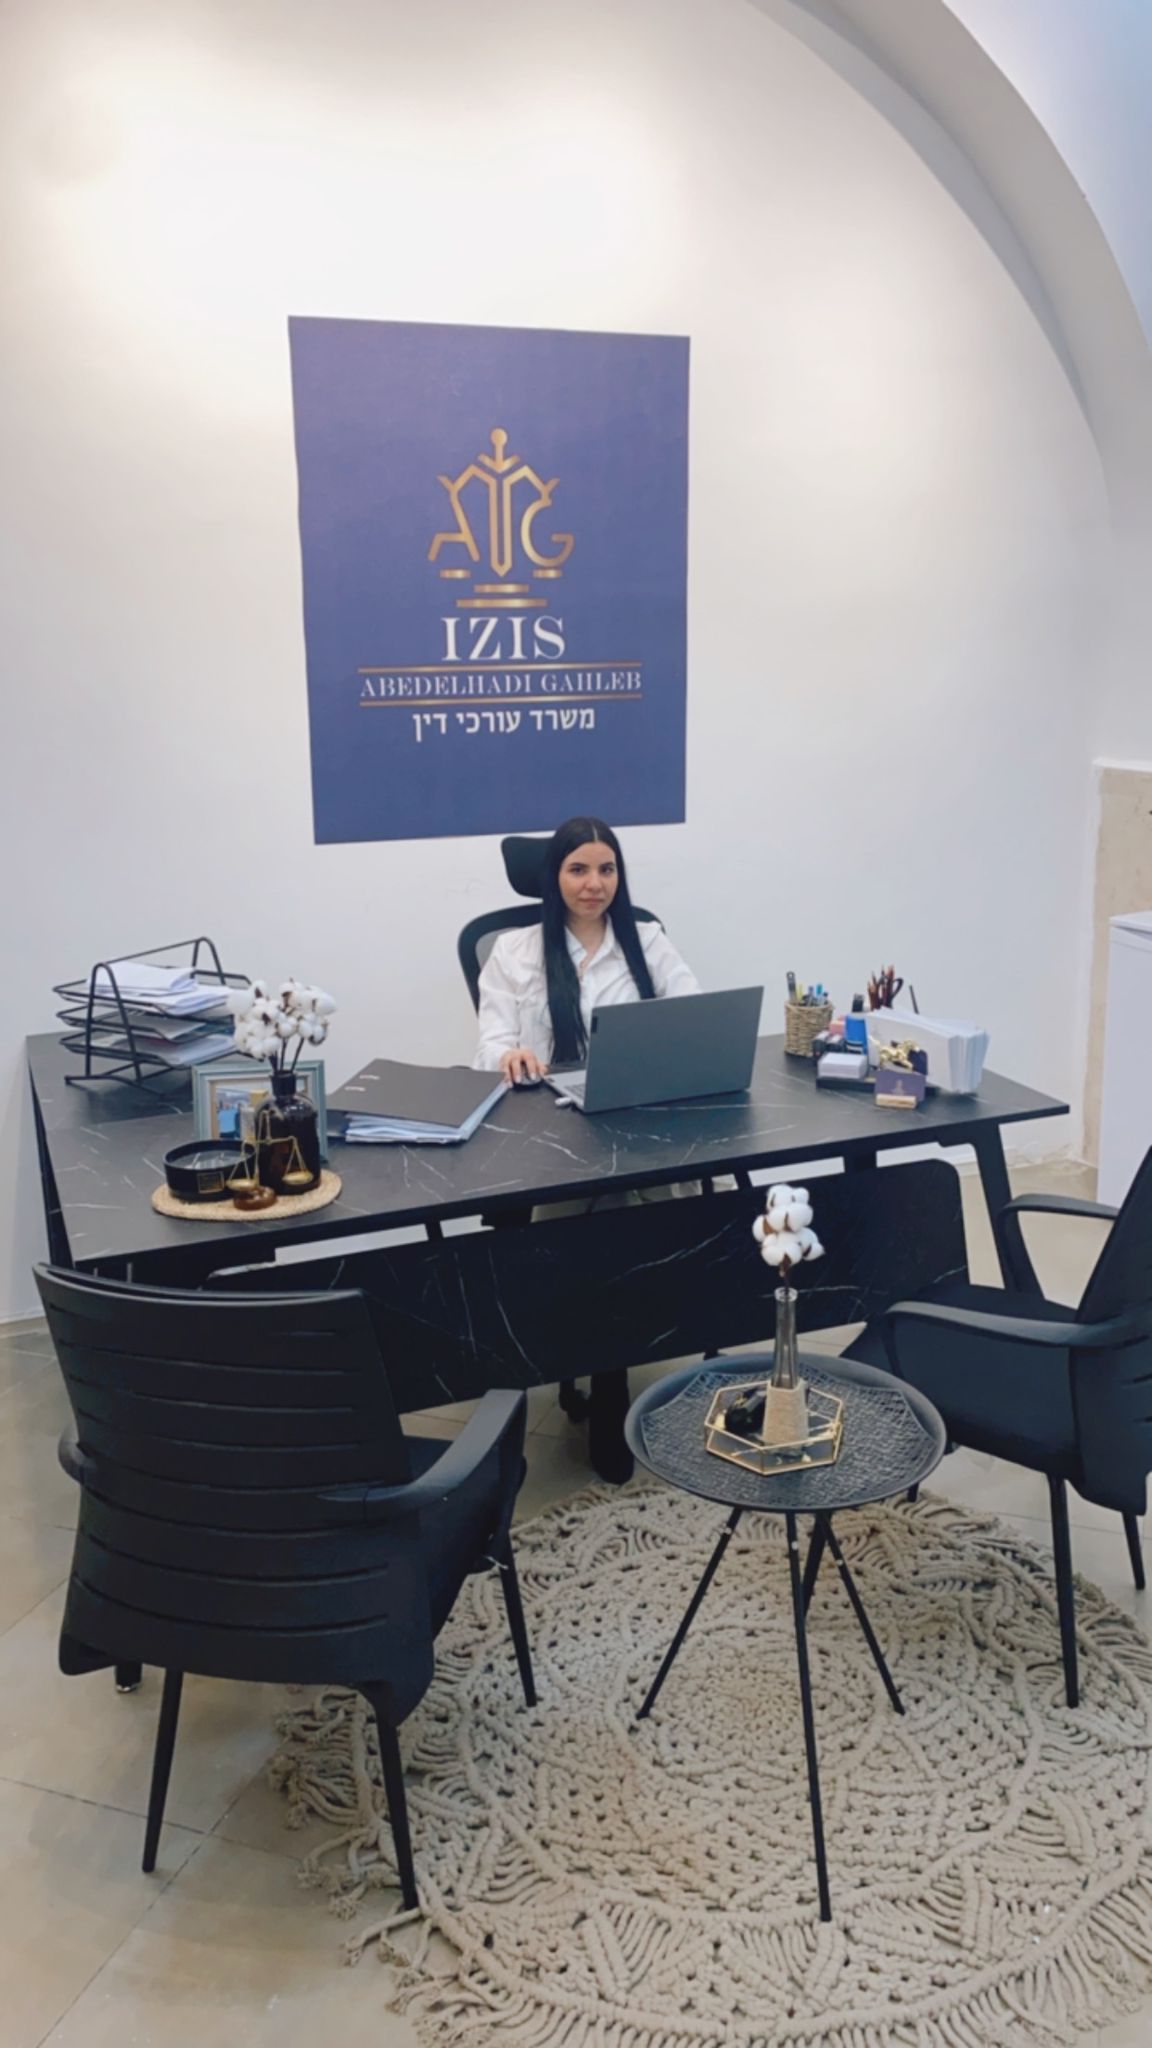 جديد في يافا: افتتاح مكتب ايزيس للمحاماة 